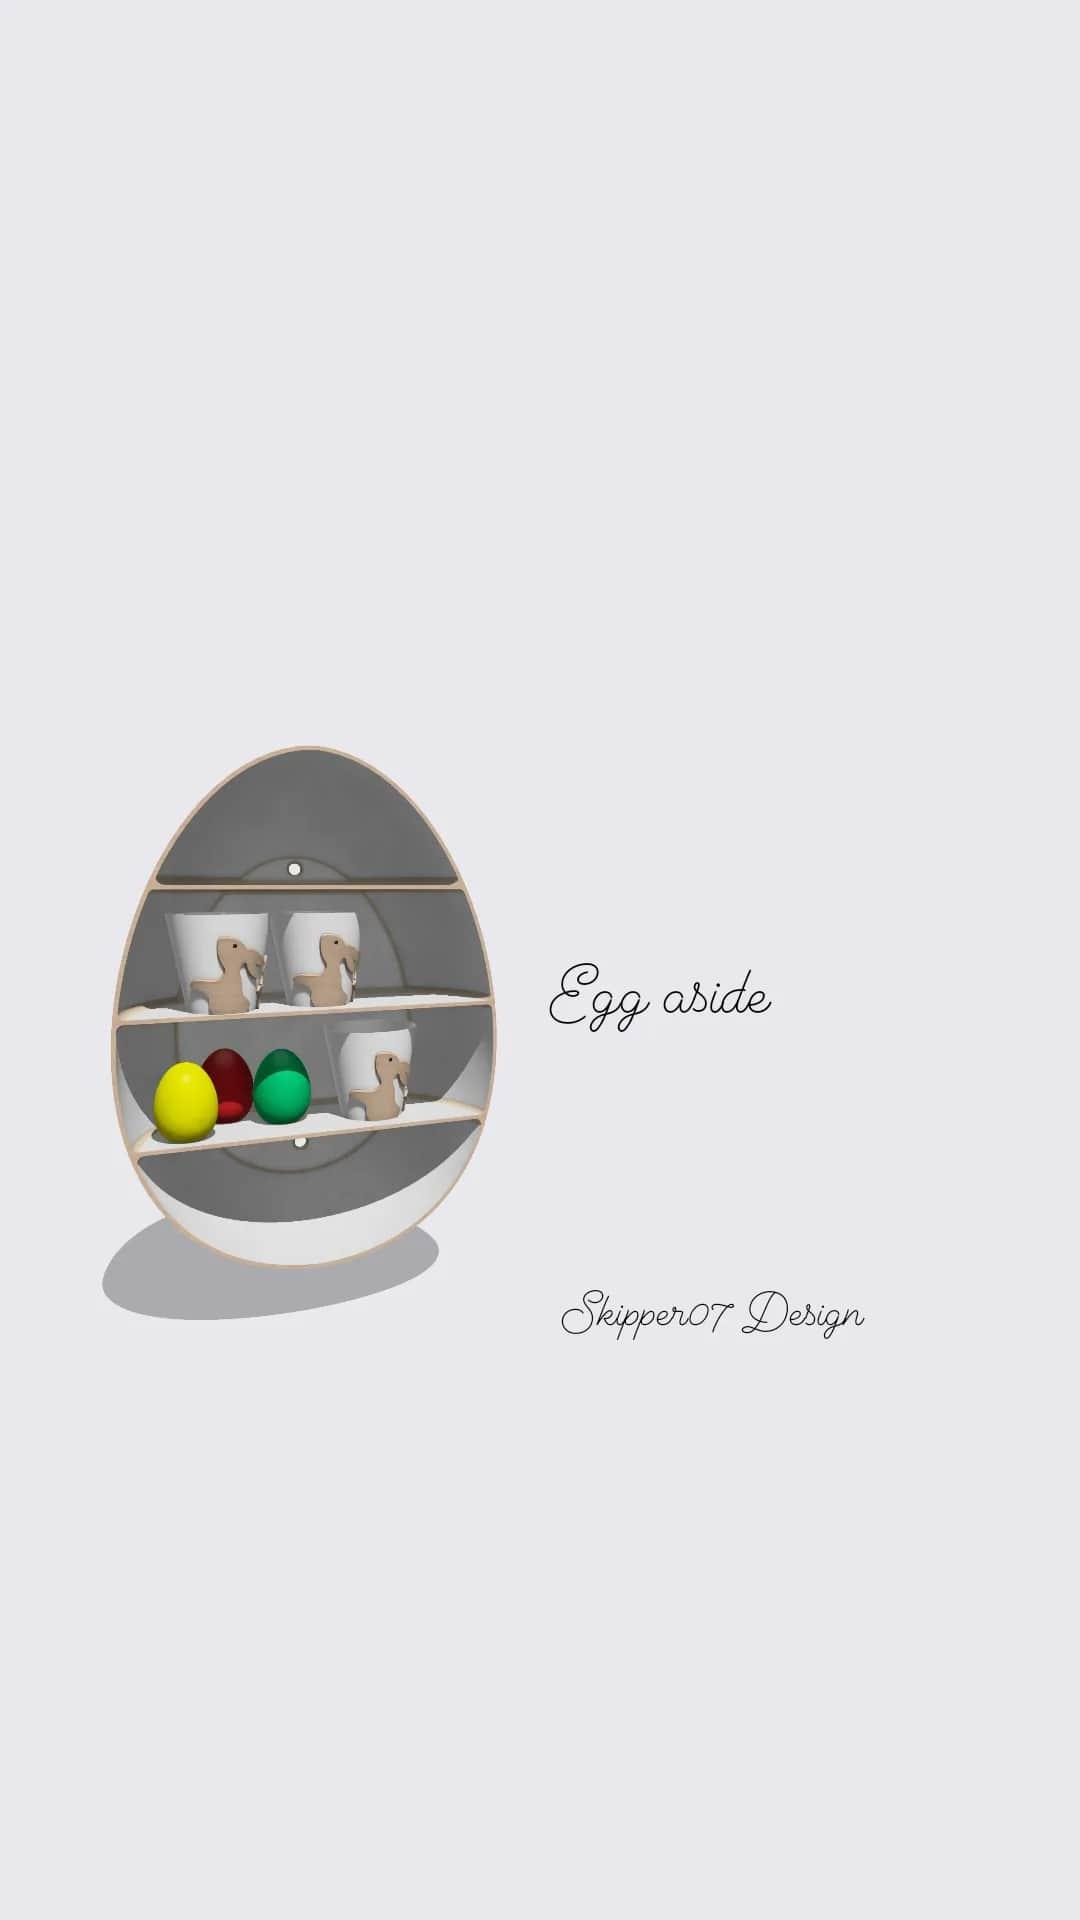 Egg aside.stl 3d model